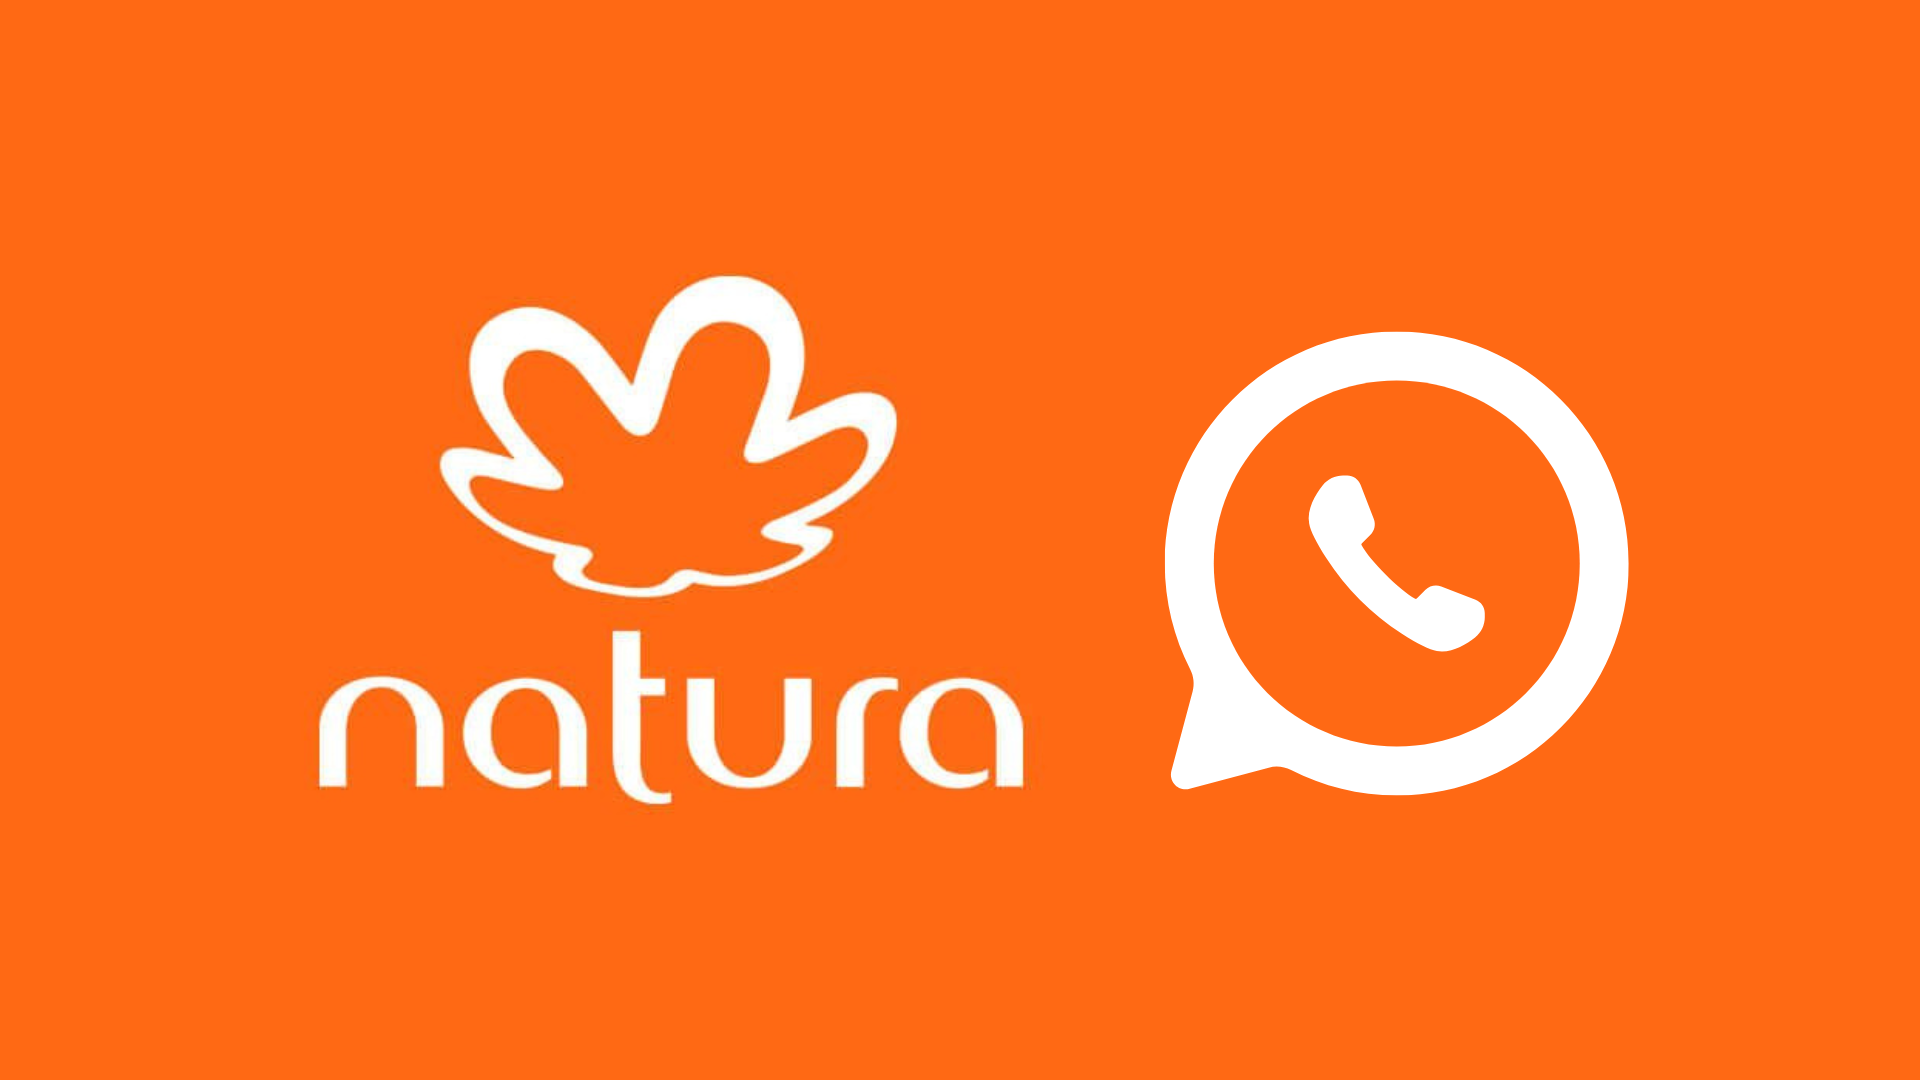 Natura é a primeira marca de cosméticos a lançar canal no WhatsApp